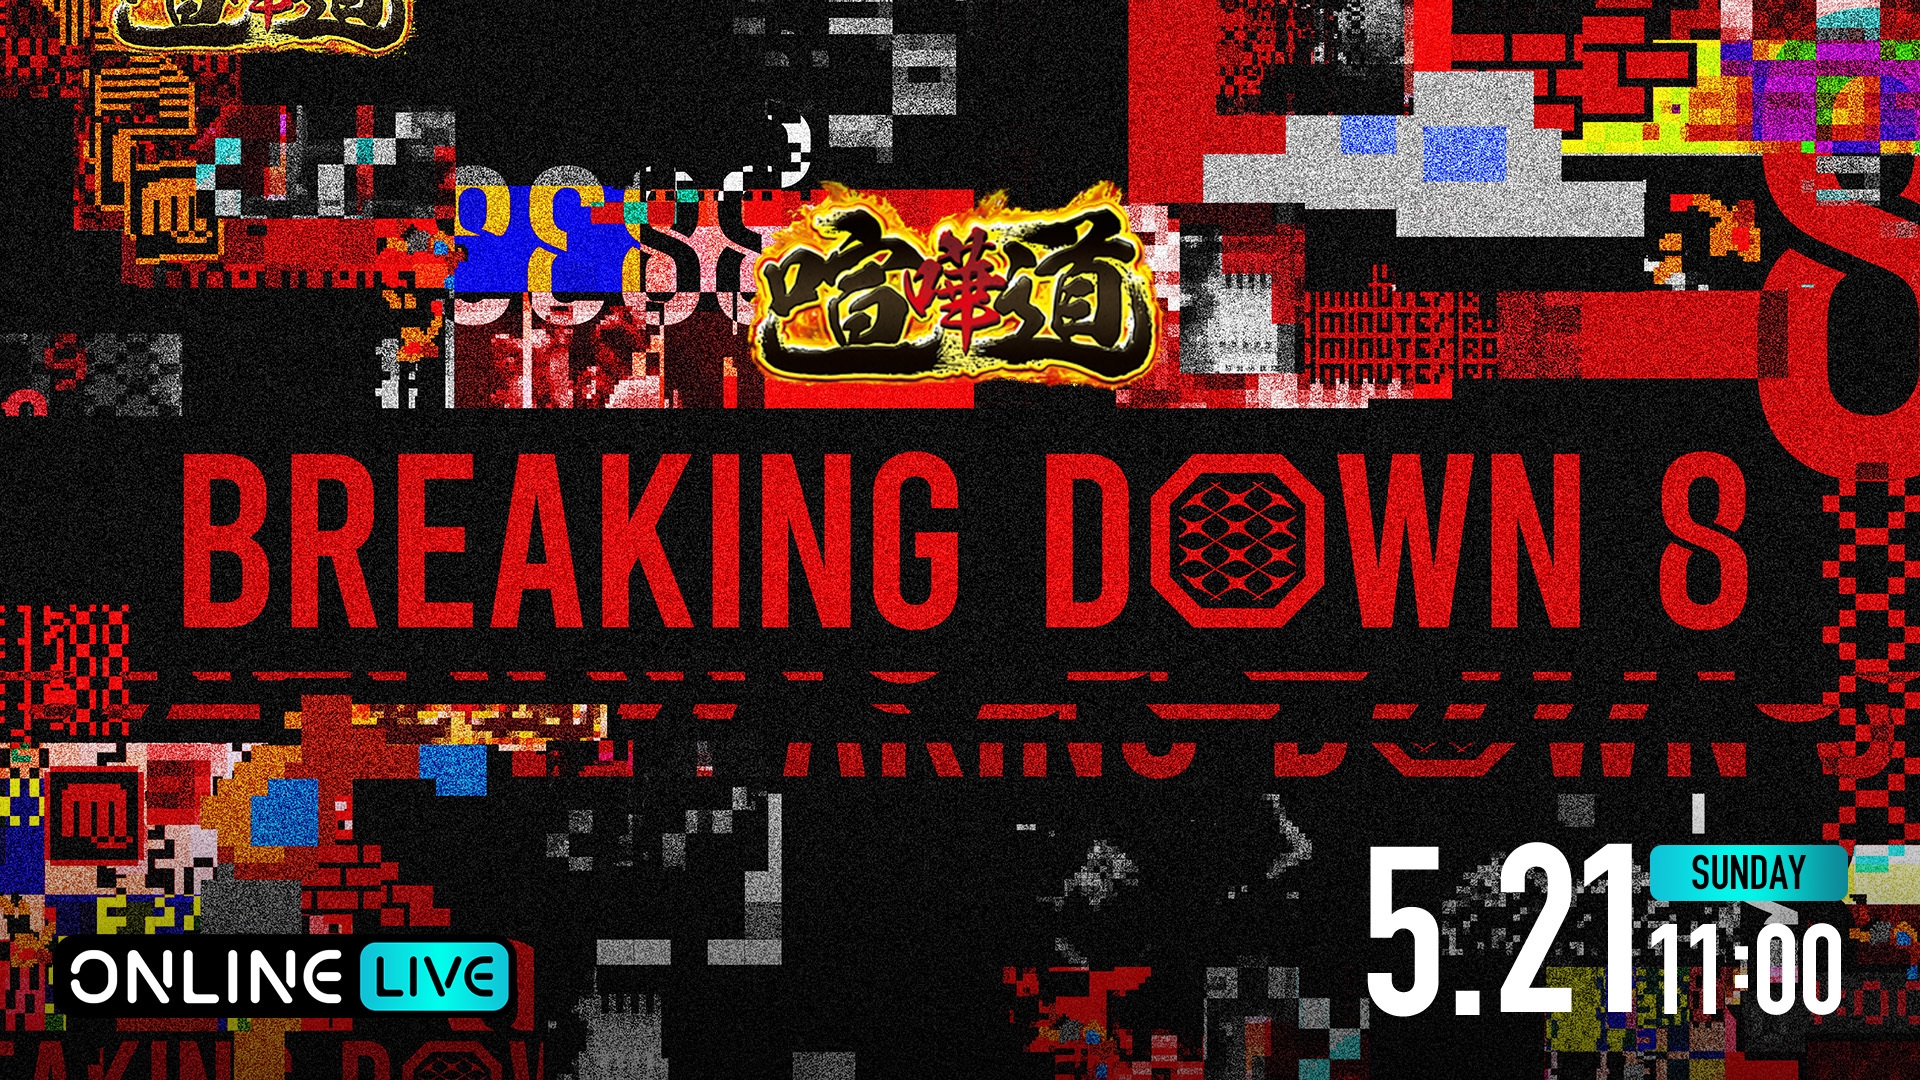 喧嘩道 presents BreakingDown8